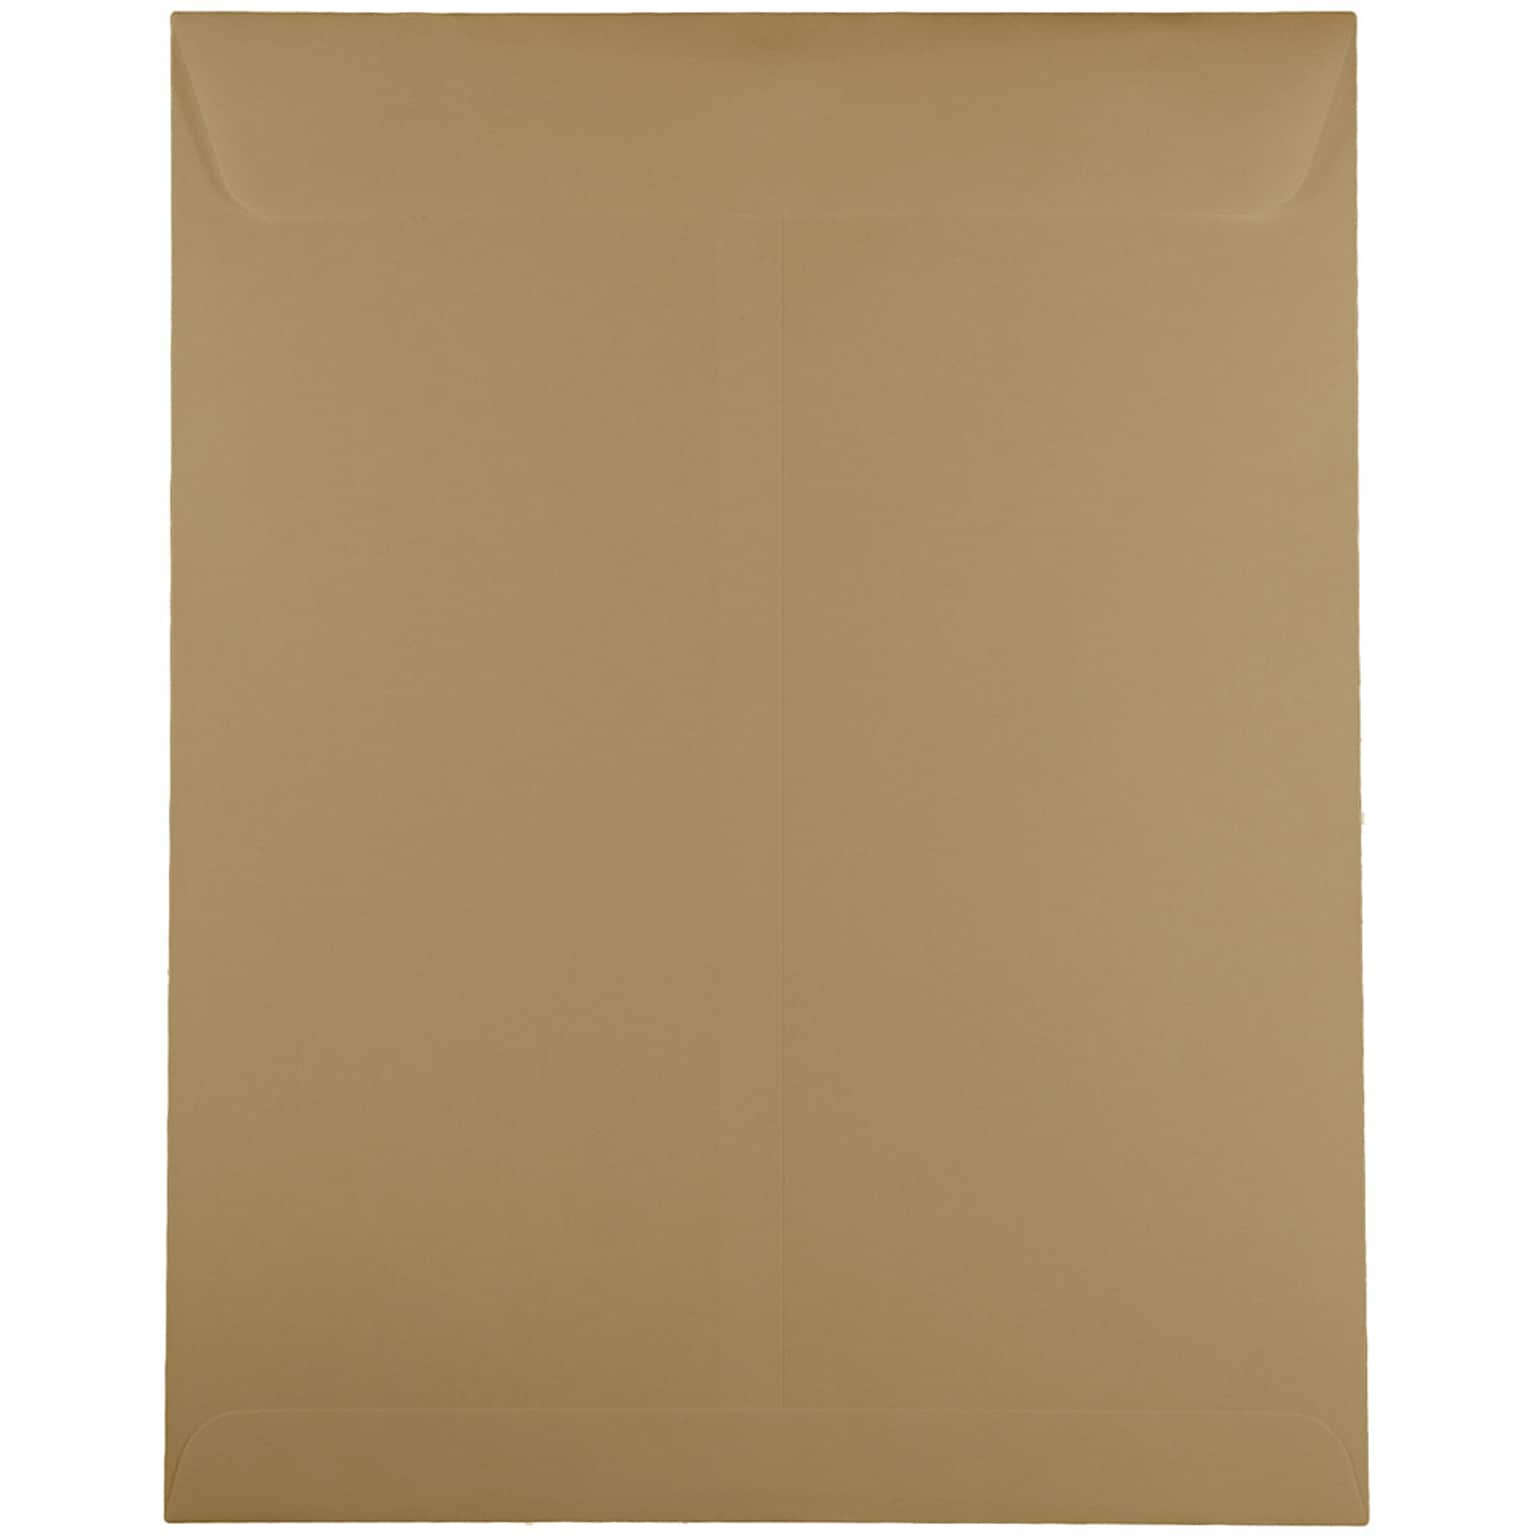 JAM Paper Open End Catalog Premium Envelopes, 10 x 13, Tan, 100/Pack (31287544D)